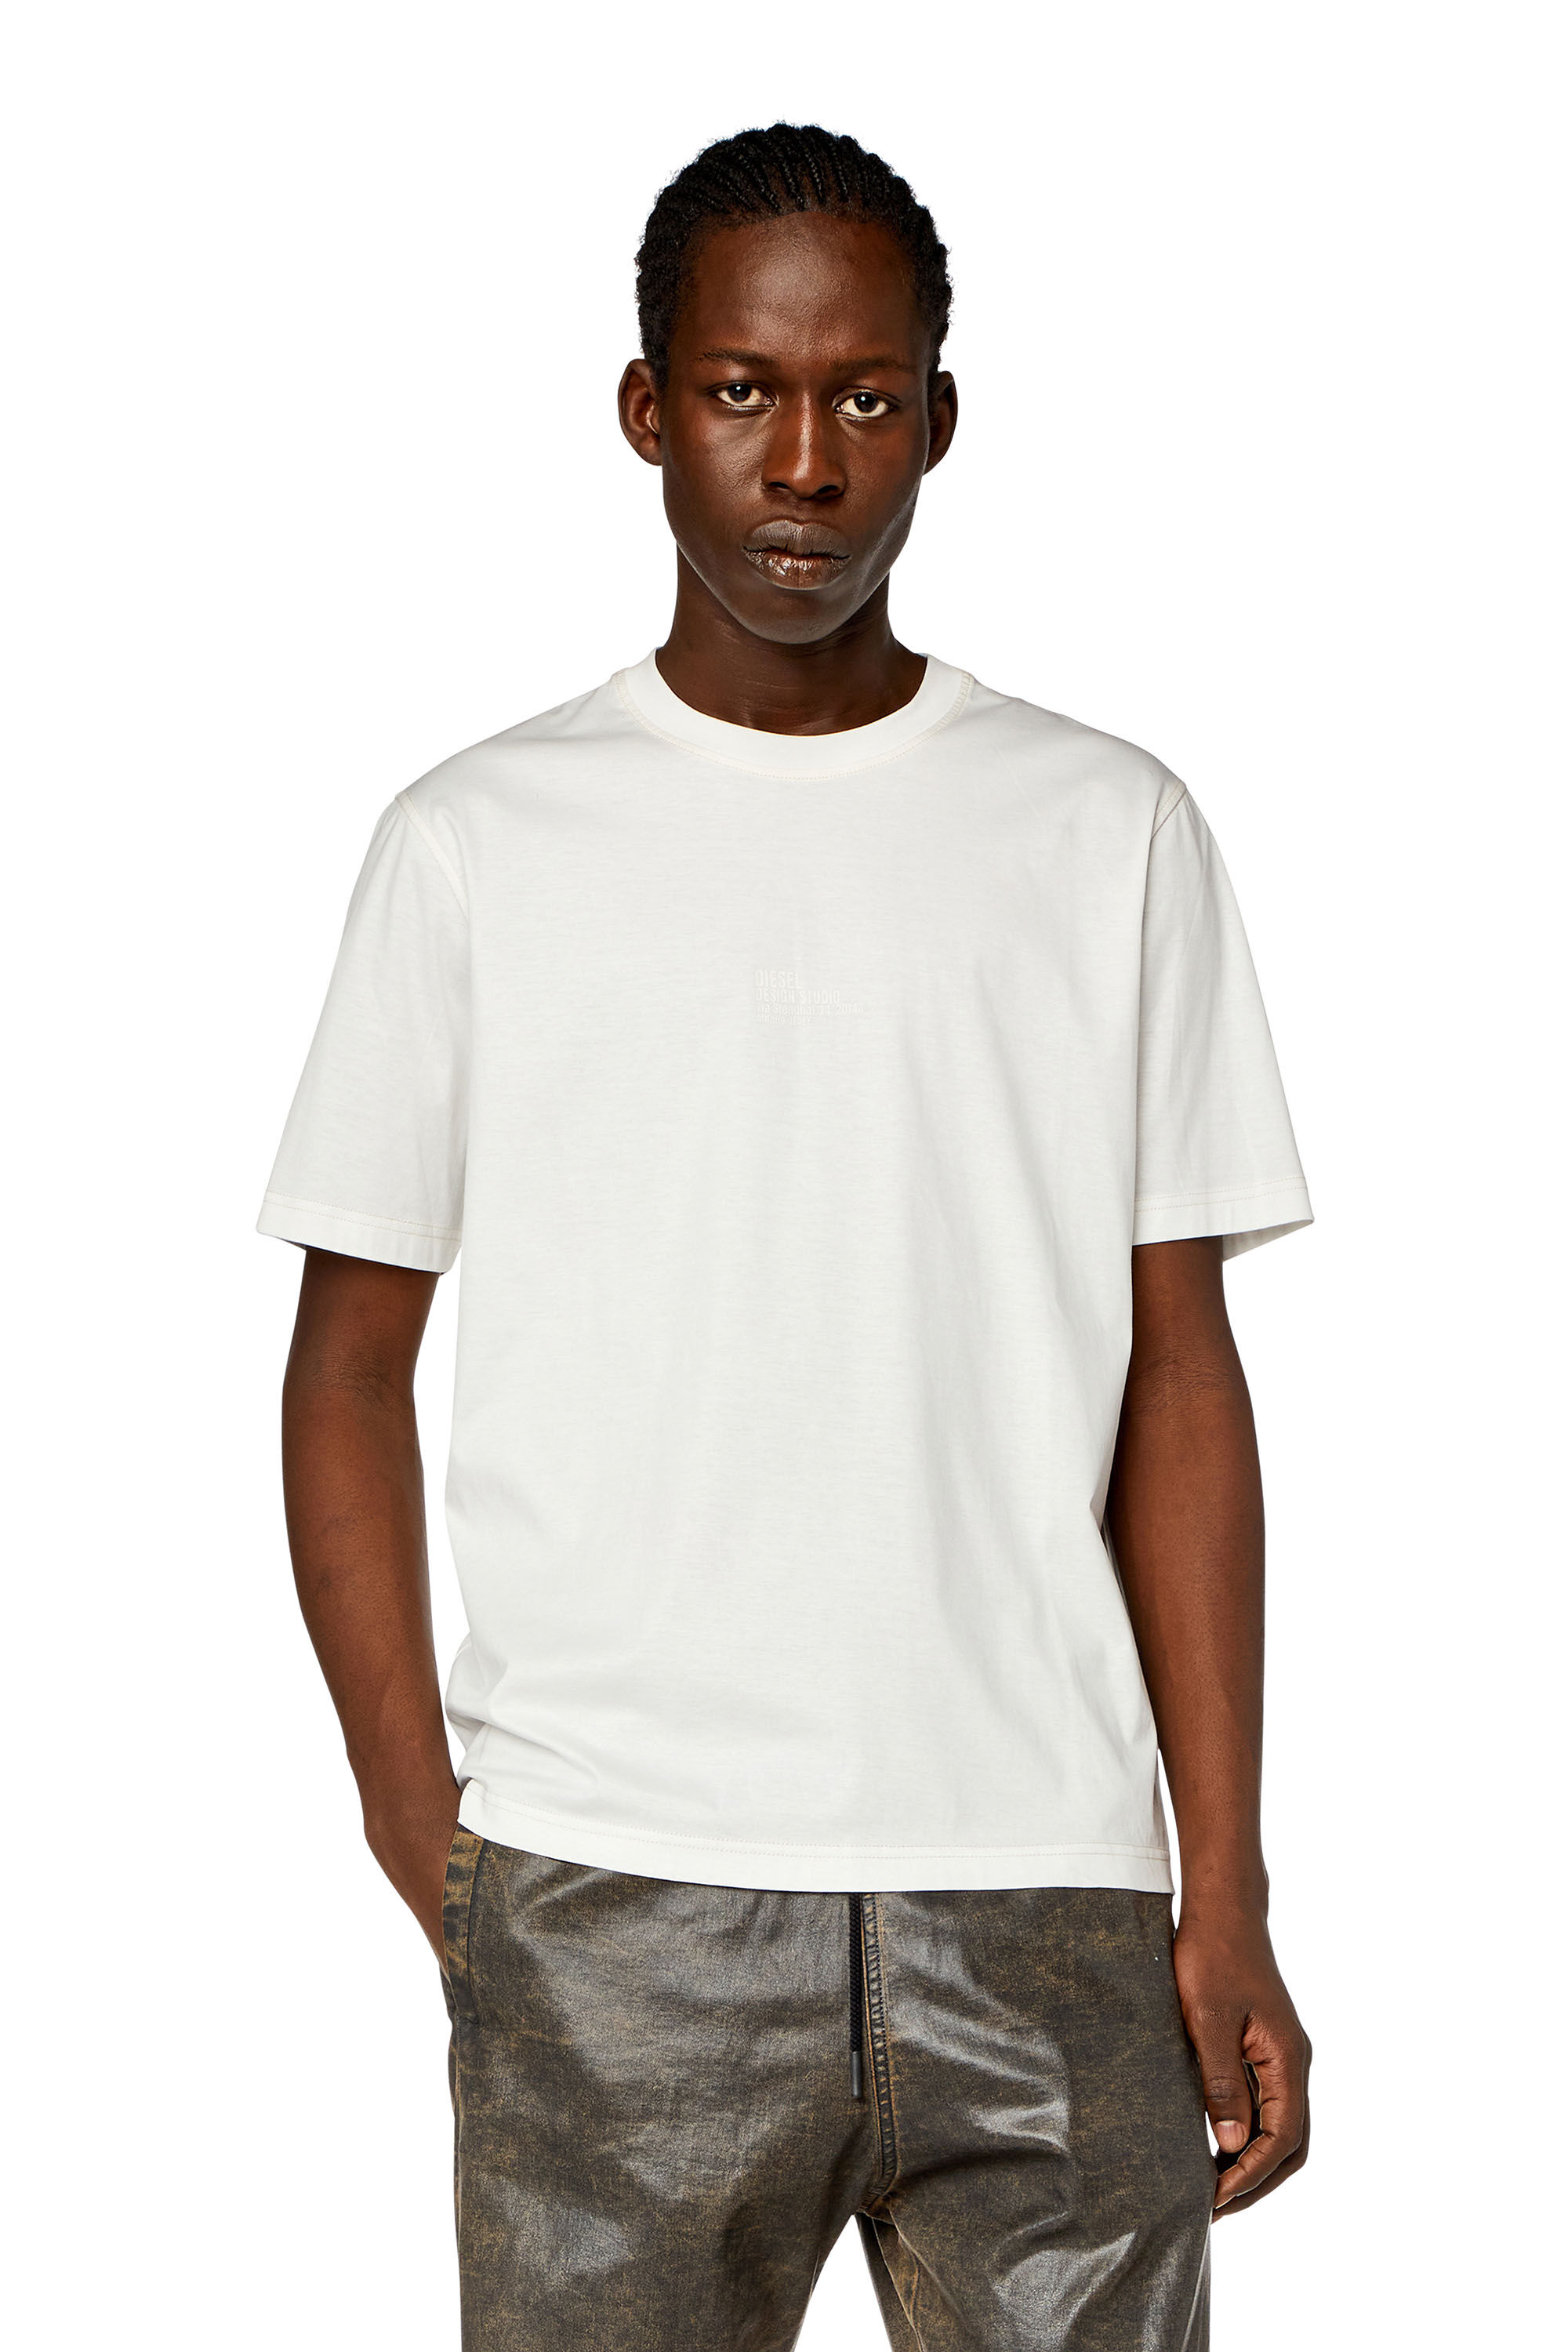 Diesel - T-MUST-SLITS-N2, Man T-shirt with Diesel Studio print in White - Image 3